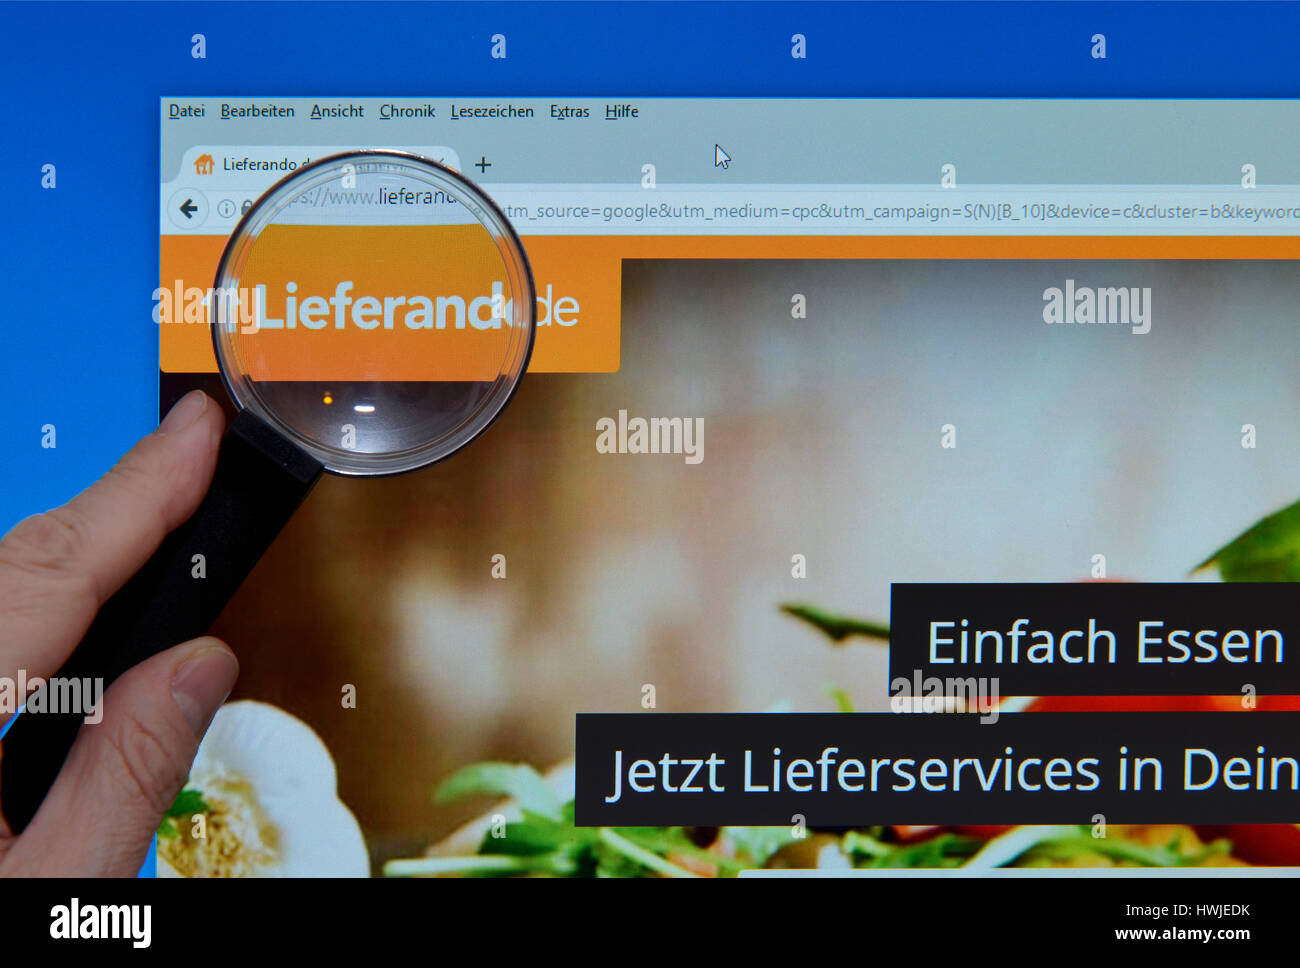 lieferando.de, Lupe, Bildschirm, website Stock Photo